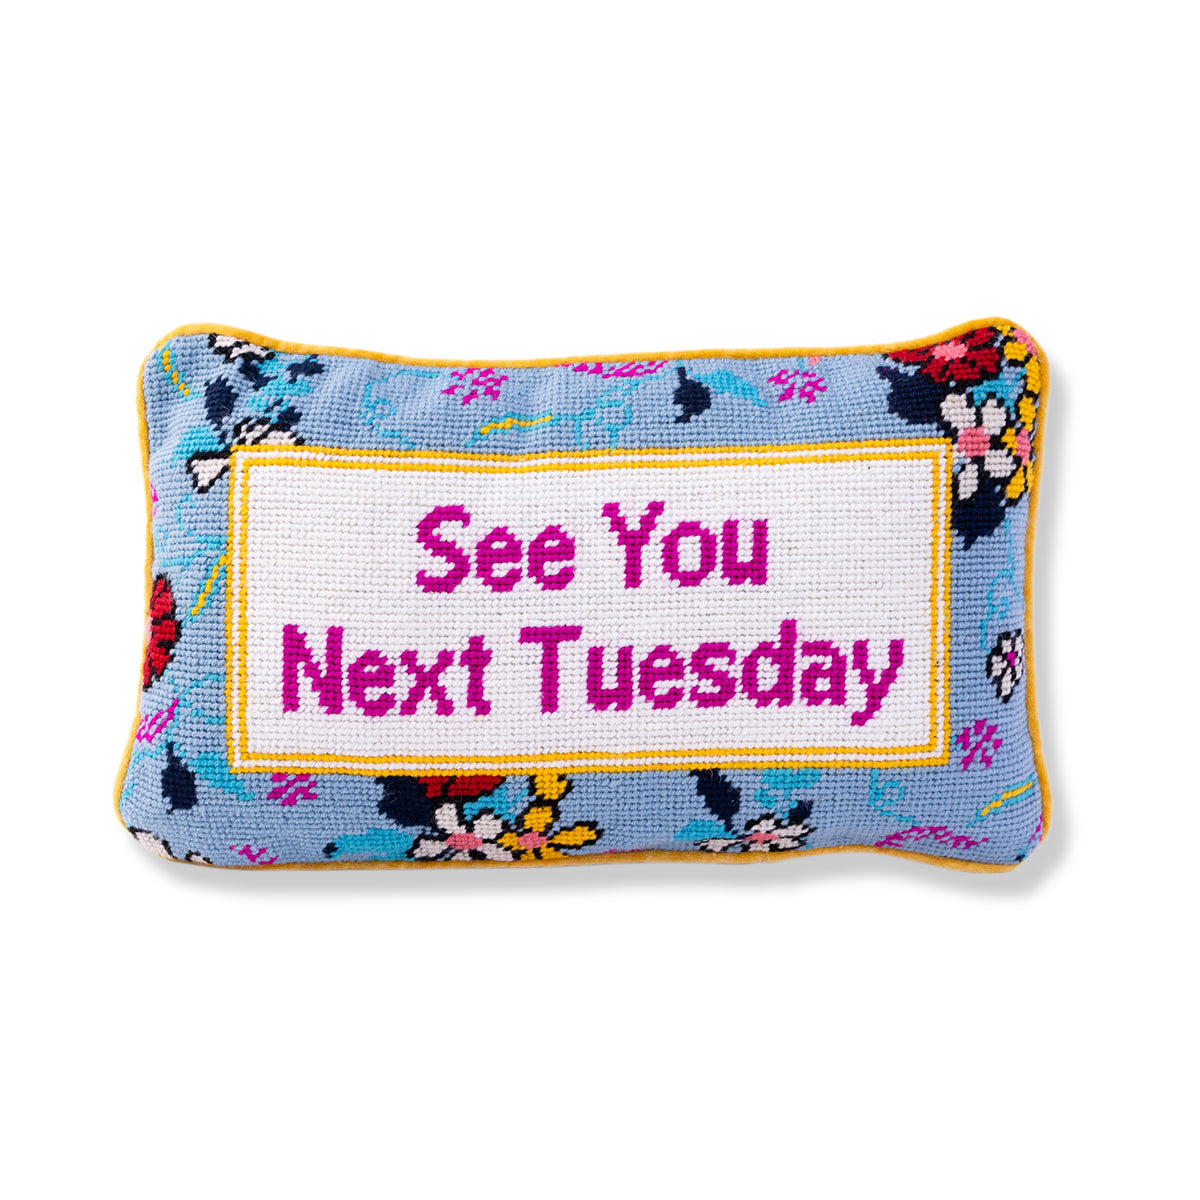 Next Tuesday Needlepoint Pillow